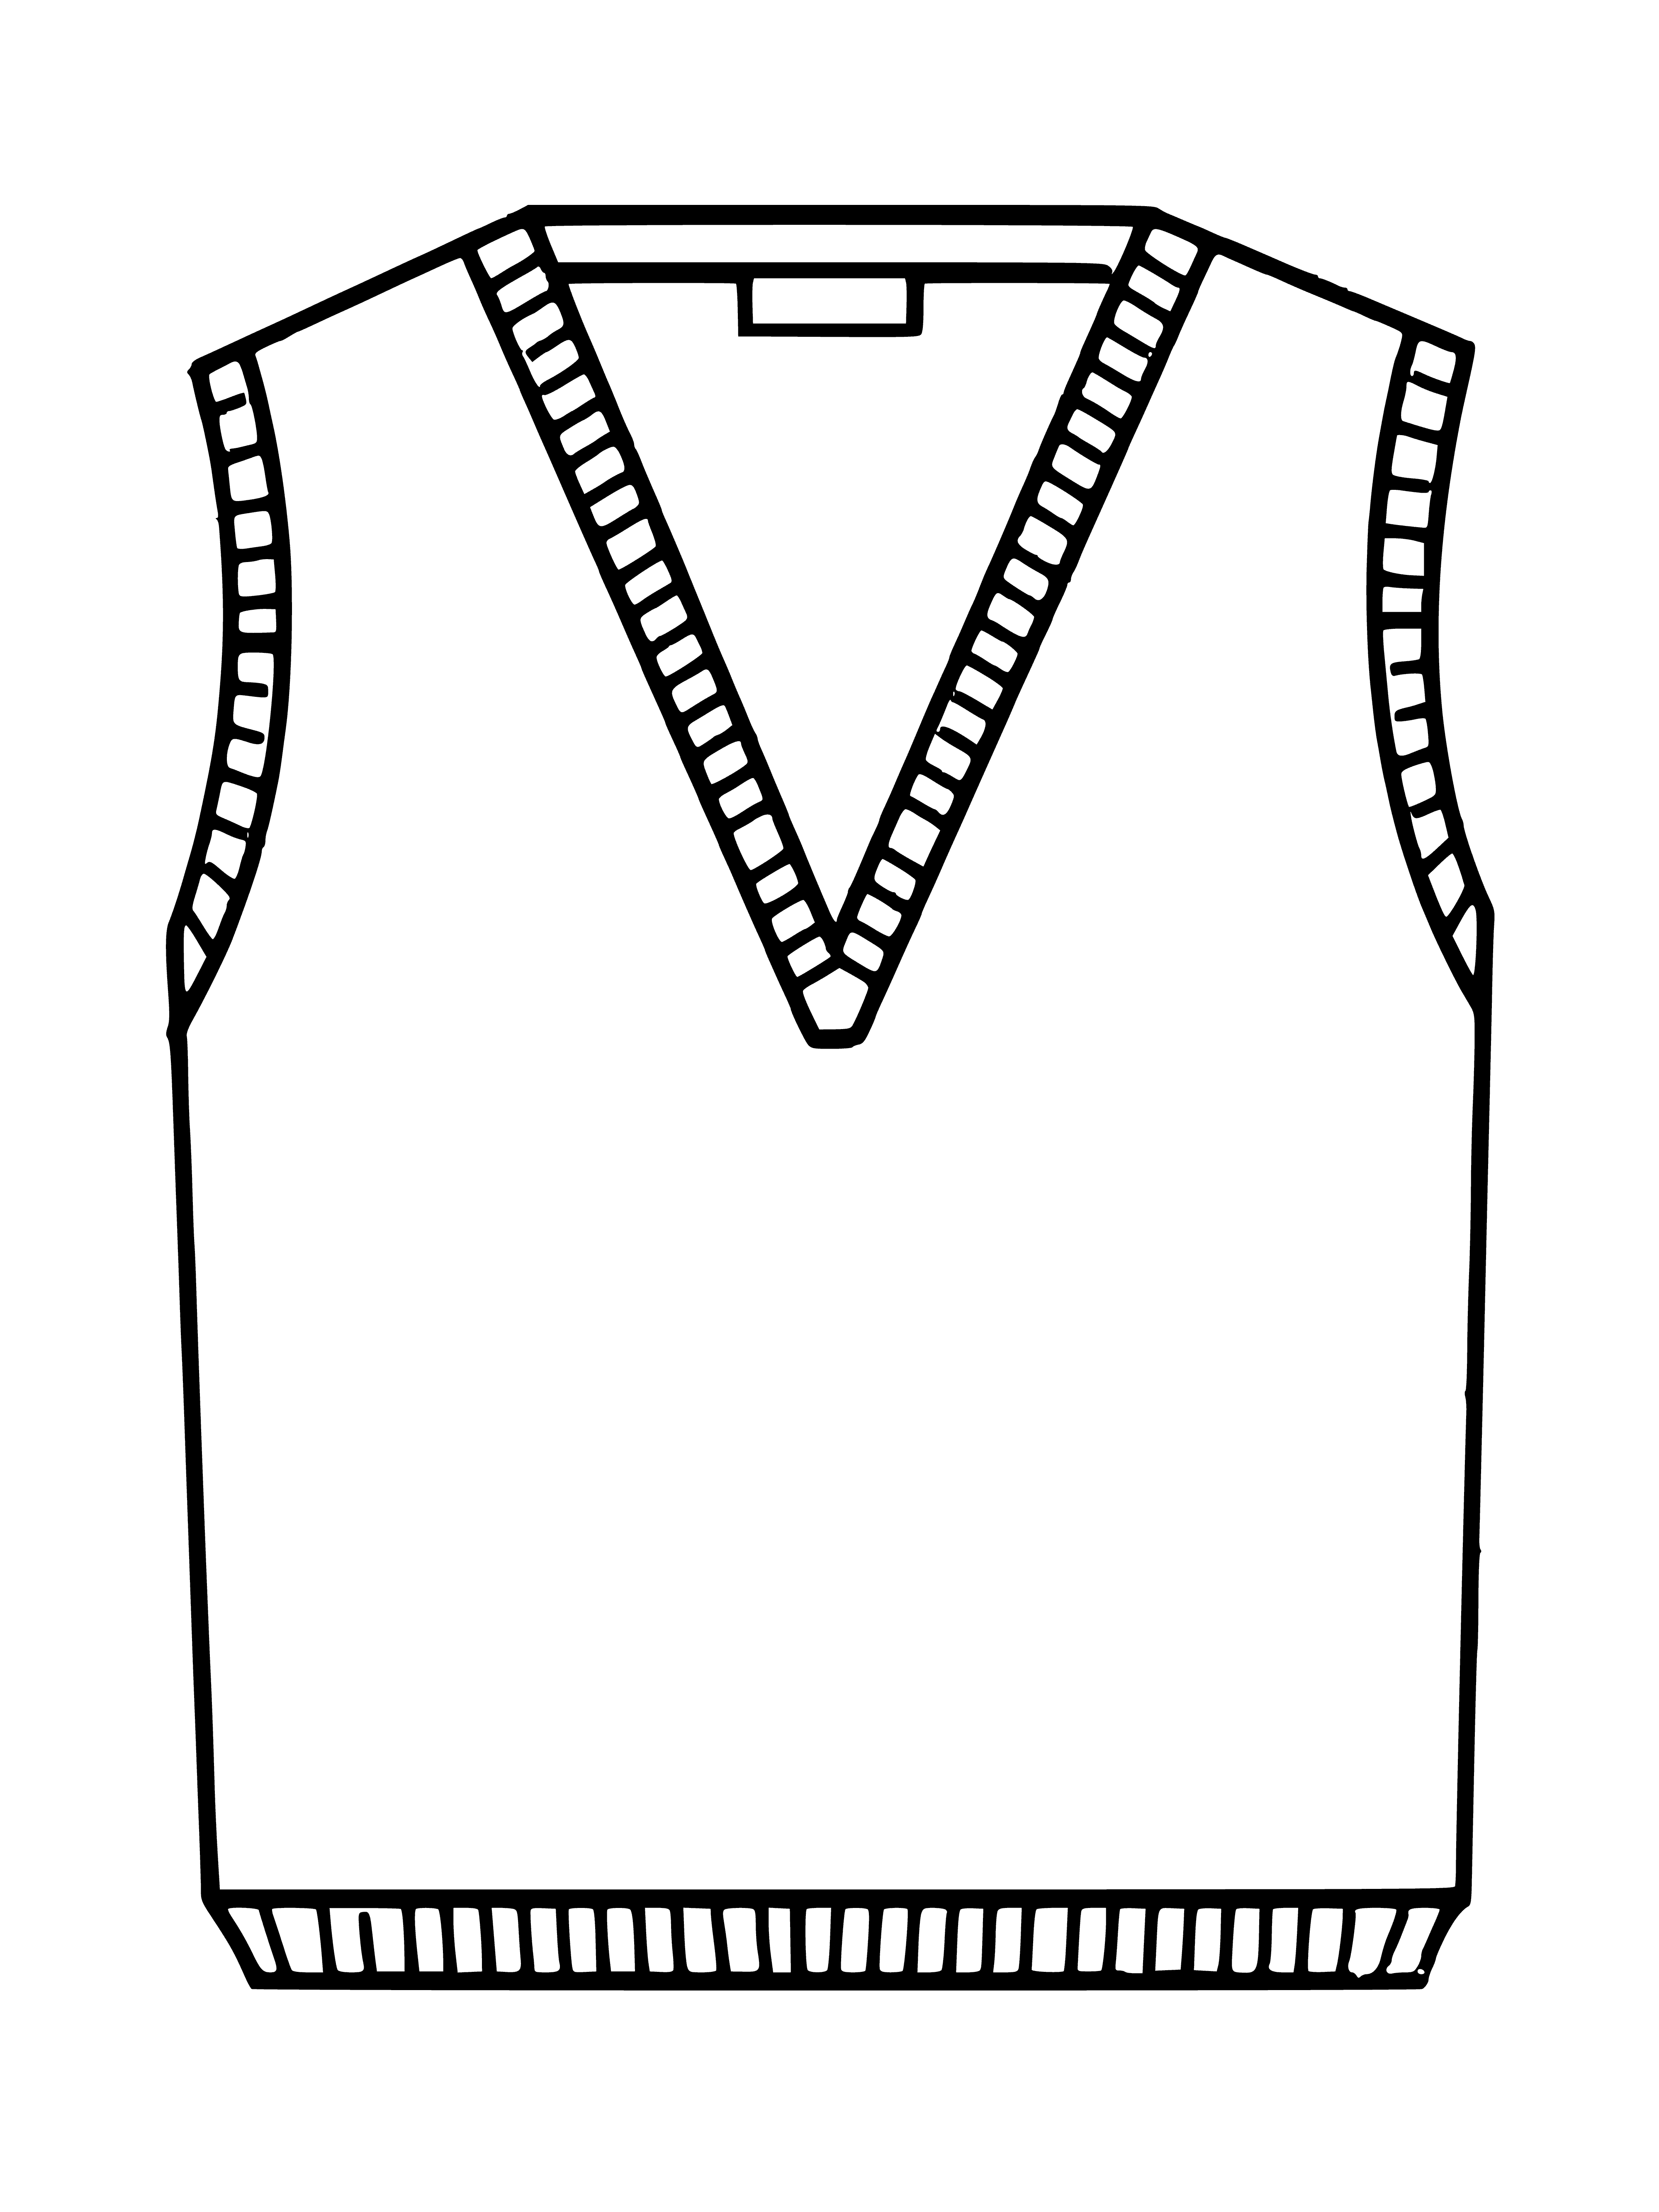 Vest coloring page